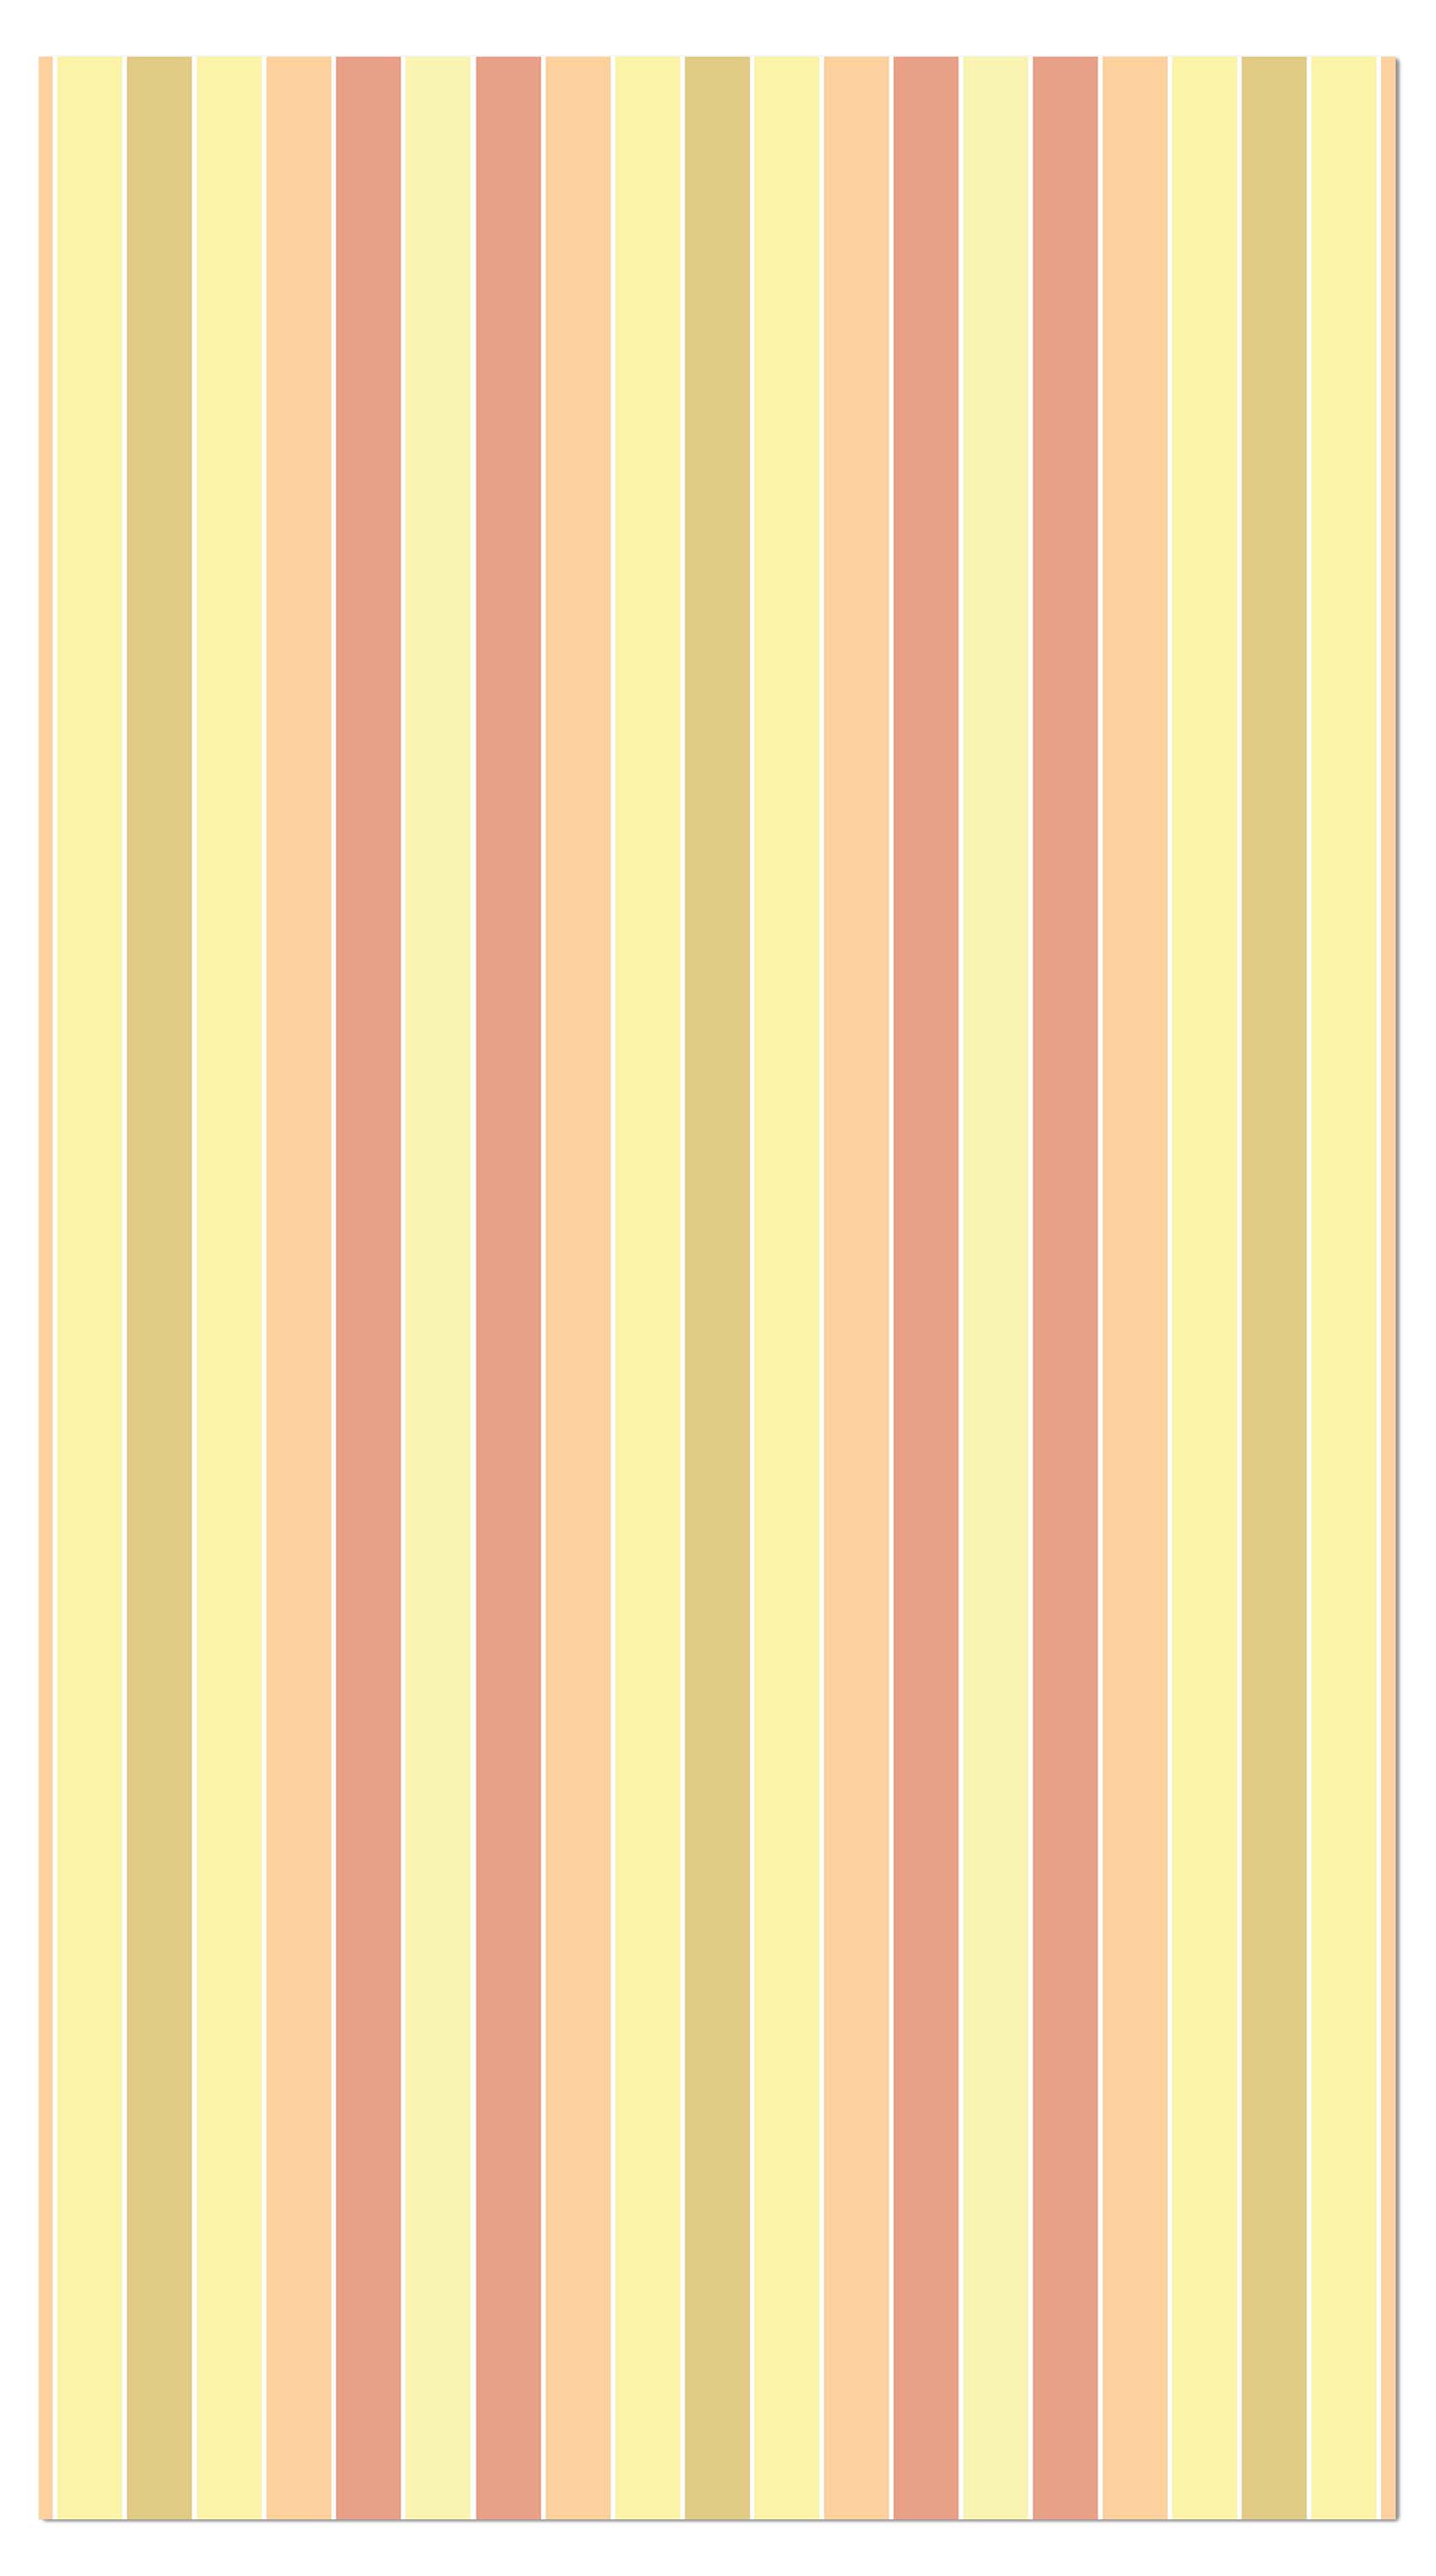 Garderobe Pastell Muster M0095 entdecken - Bild 4